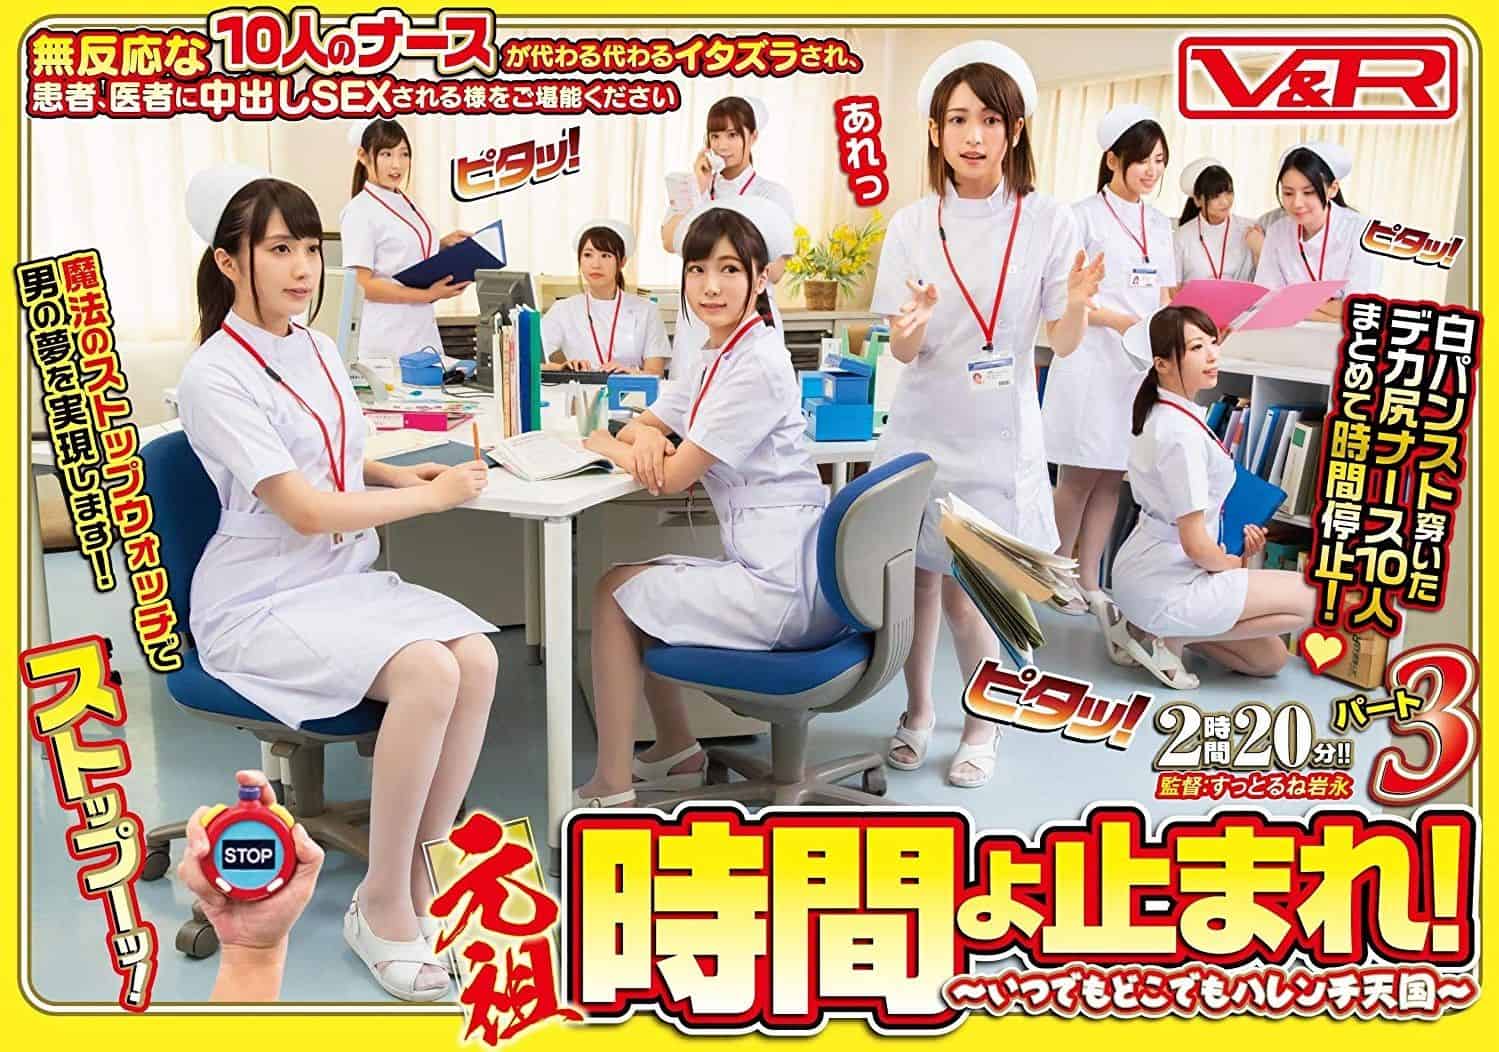 Japanese panty fetish nurse